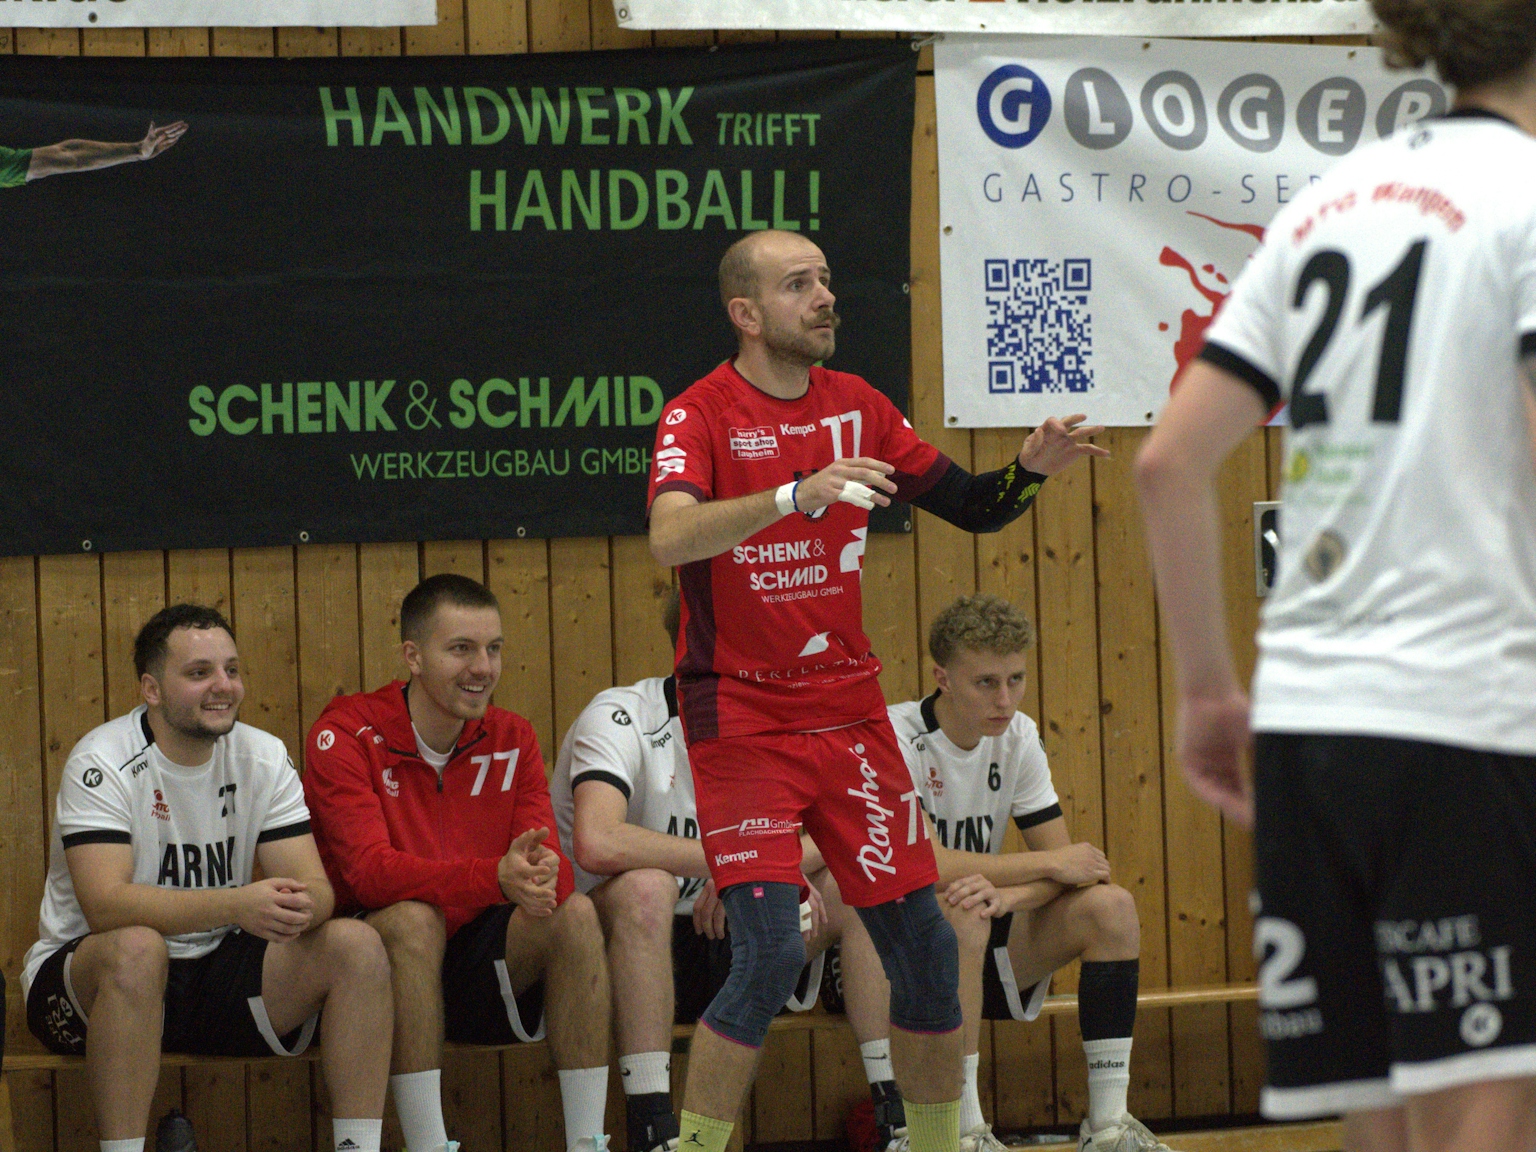 Im Fokus ist der Spieler mit der Trikotnummer 77 des HRW-Laupheim, dahinter sitzen vier Spieler des TV Altenstadt auf der Bank.